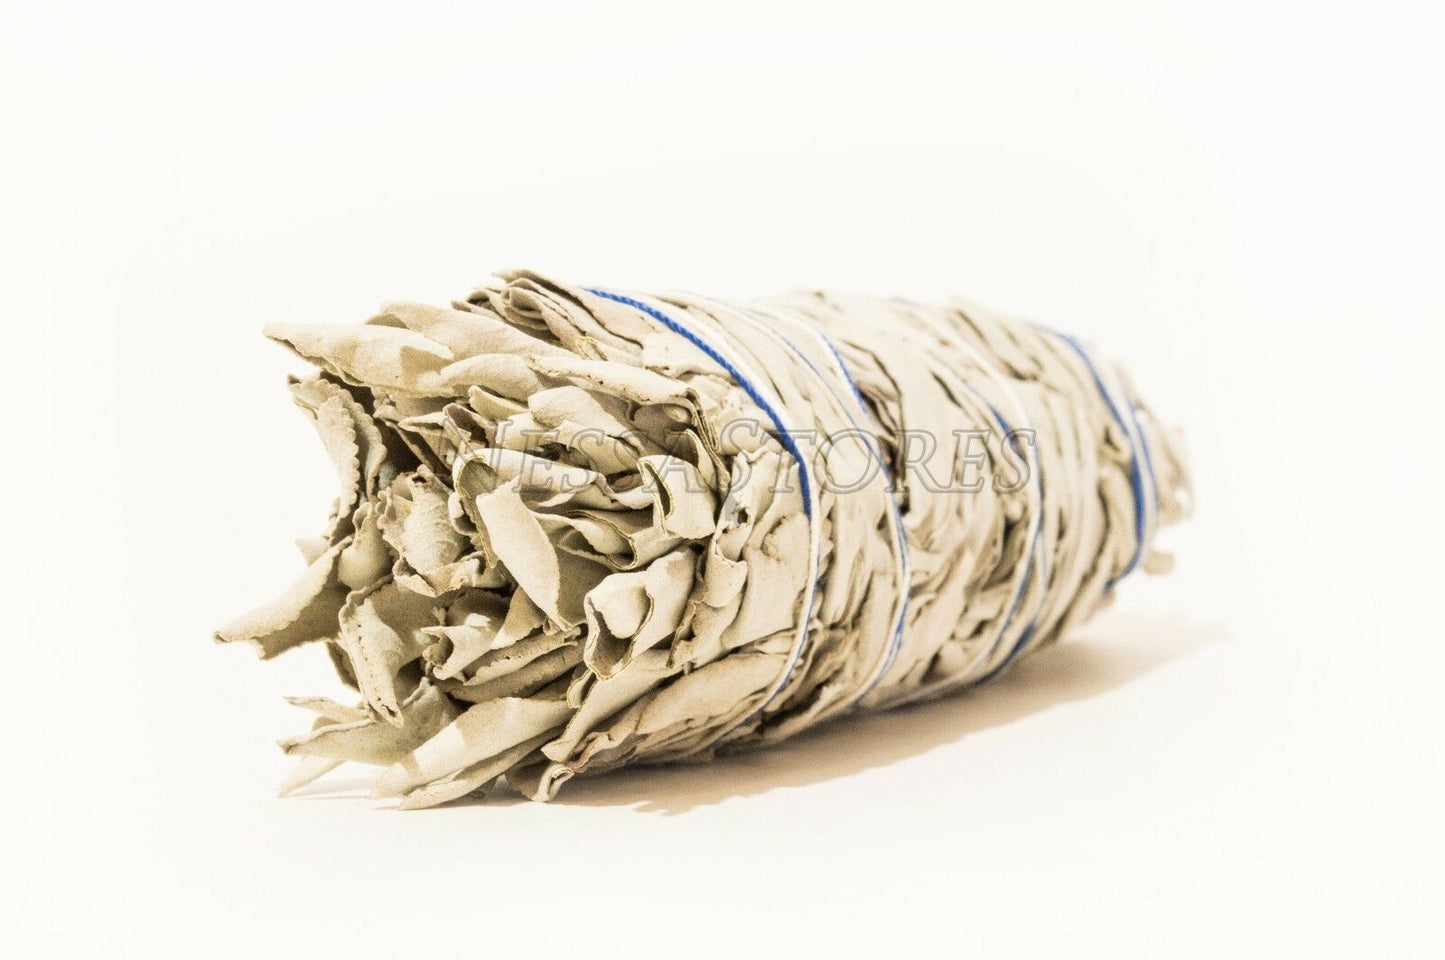 NessaStores California White Sage Smudge Incense 7"-8" Bundle (30 pcs) #JC-009